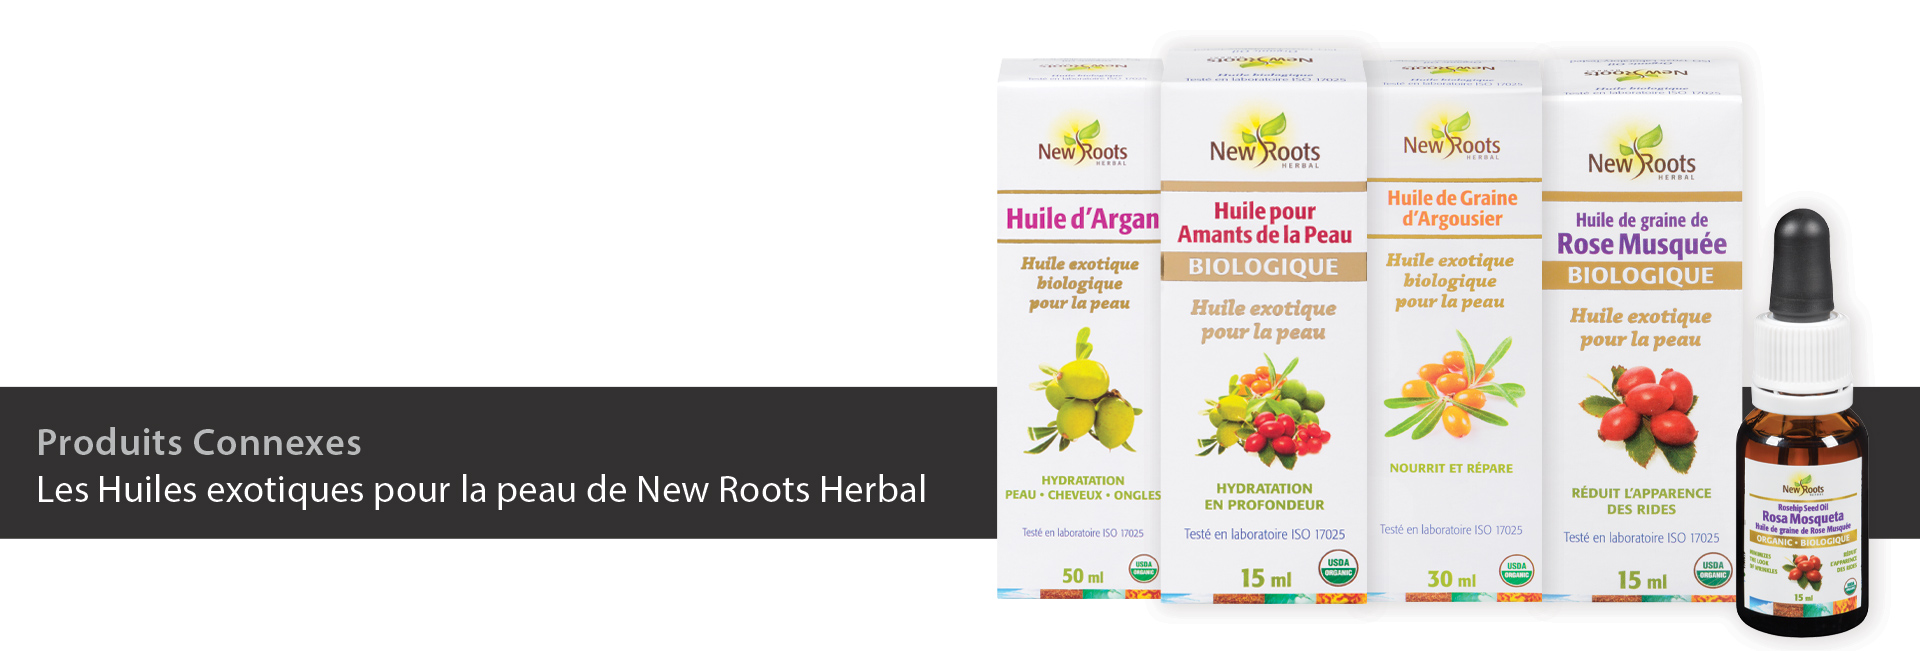 Les Huiles exotiques pour la peau de New Roots Herbal